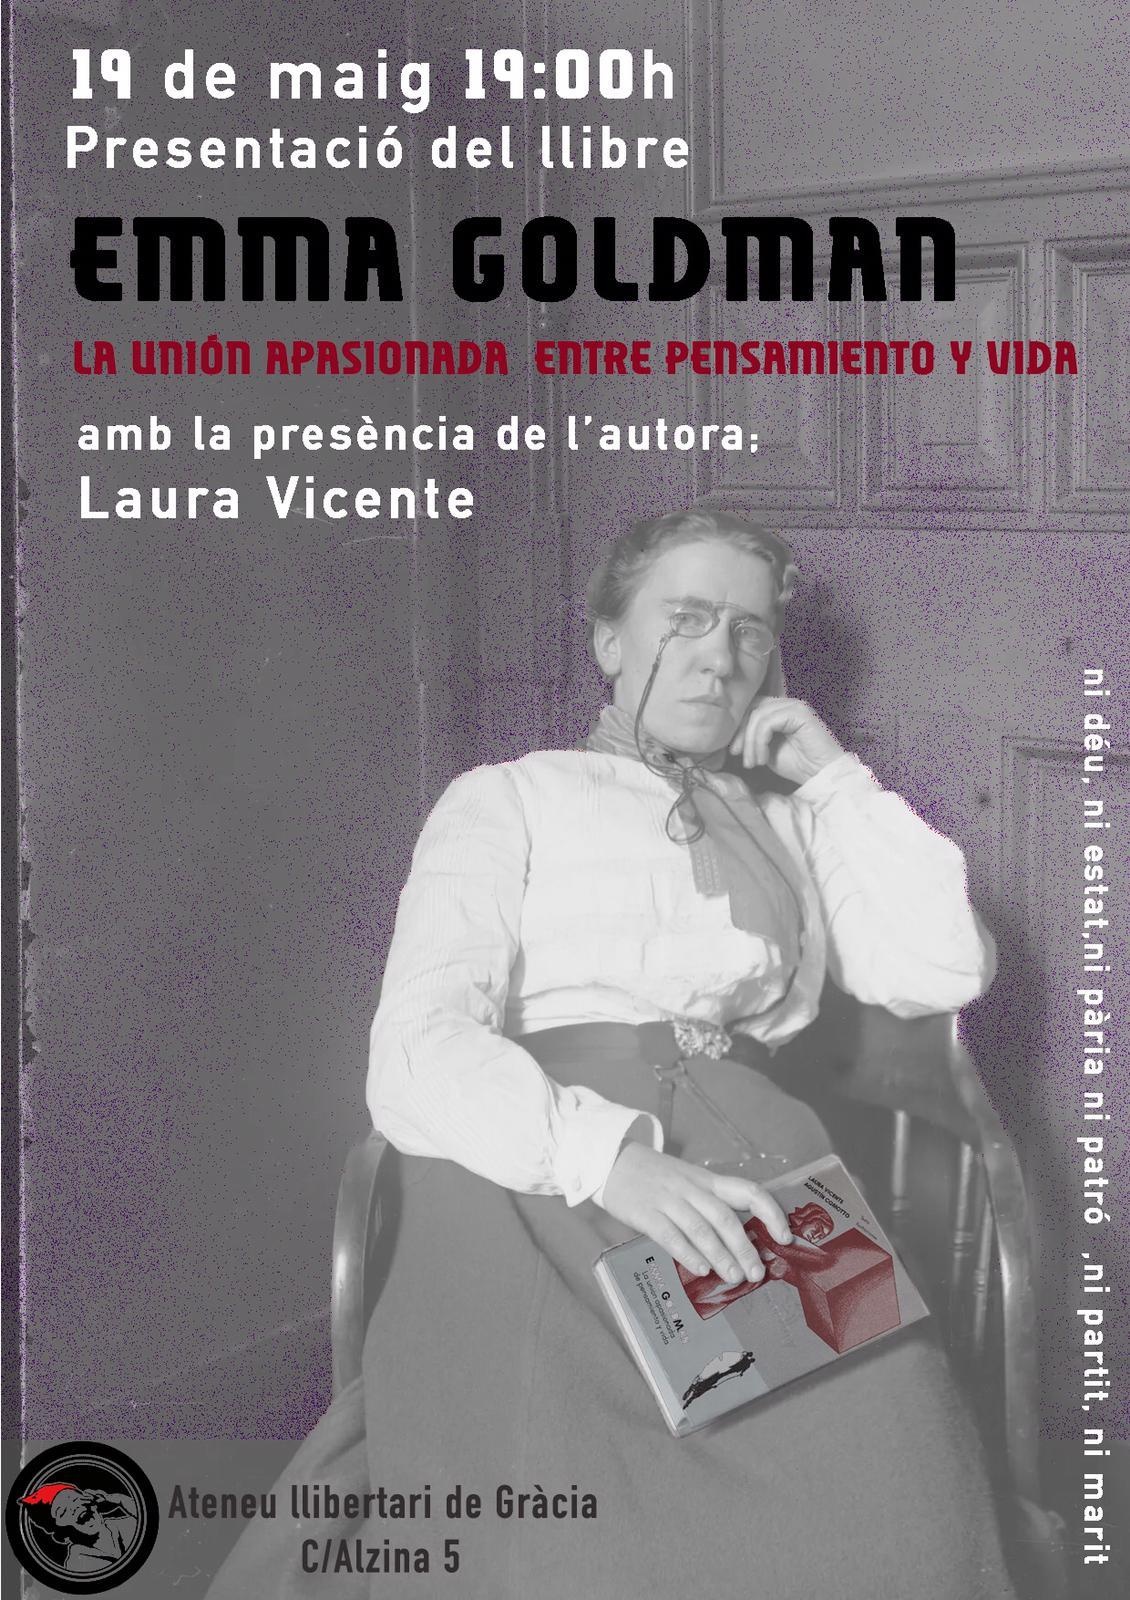 Presentació del llibre EMMA GOLDMAN, LA UNION APASIONADA ENTRE PENSAMIENTO Y VIDA de Laura Vicente